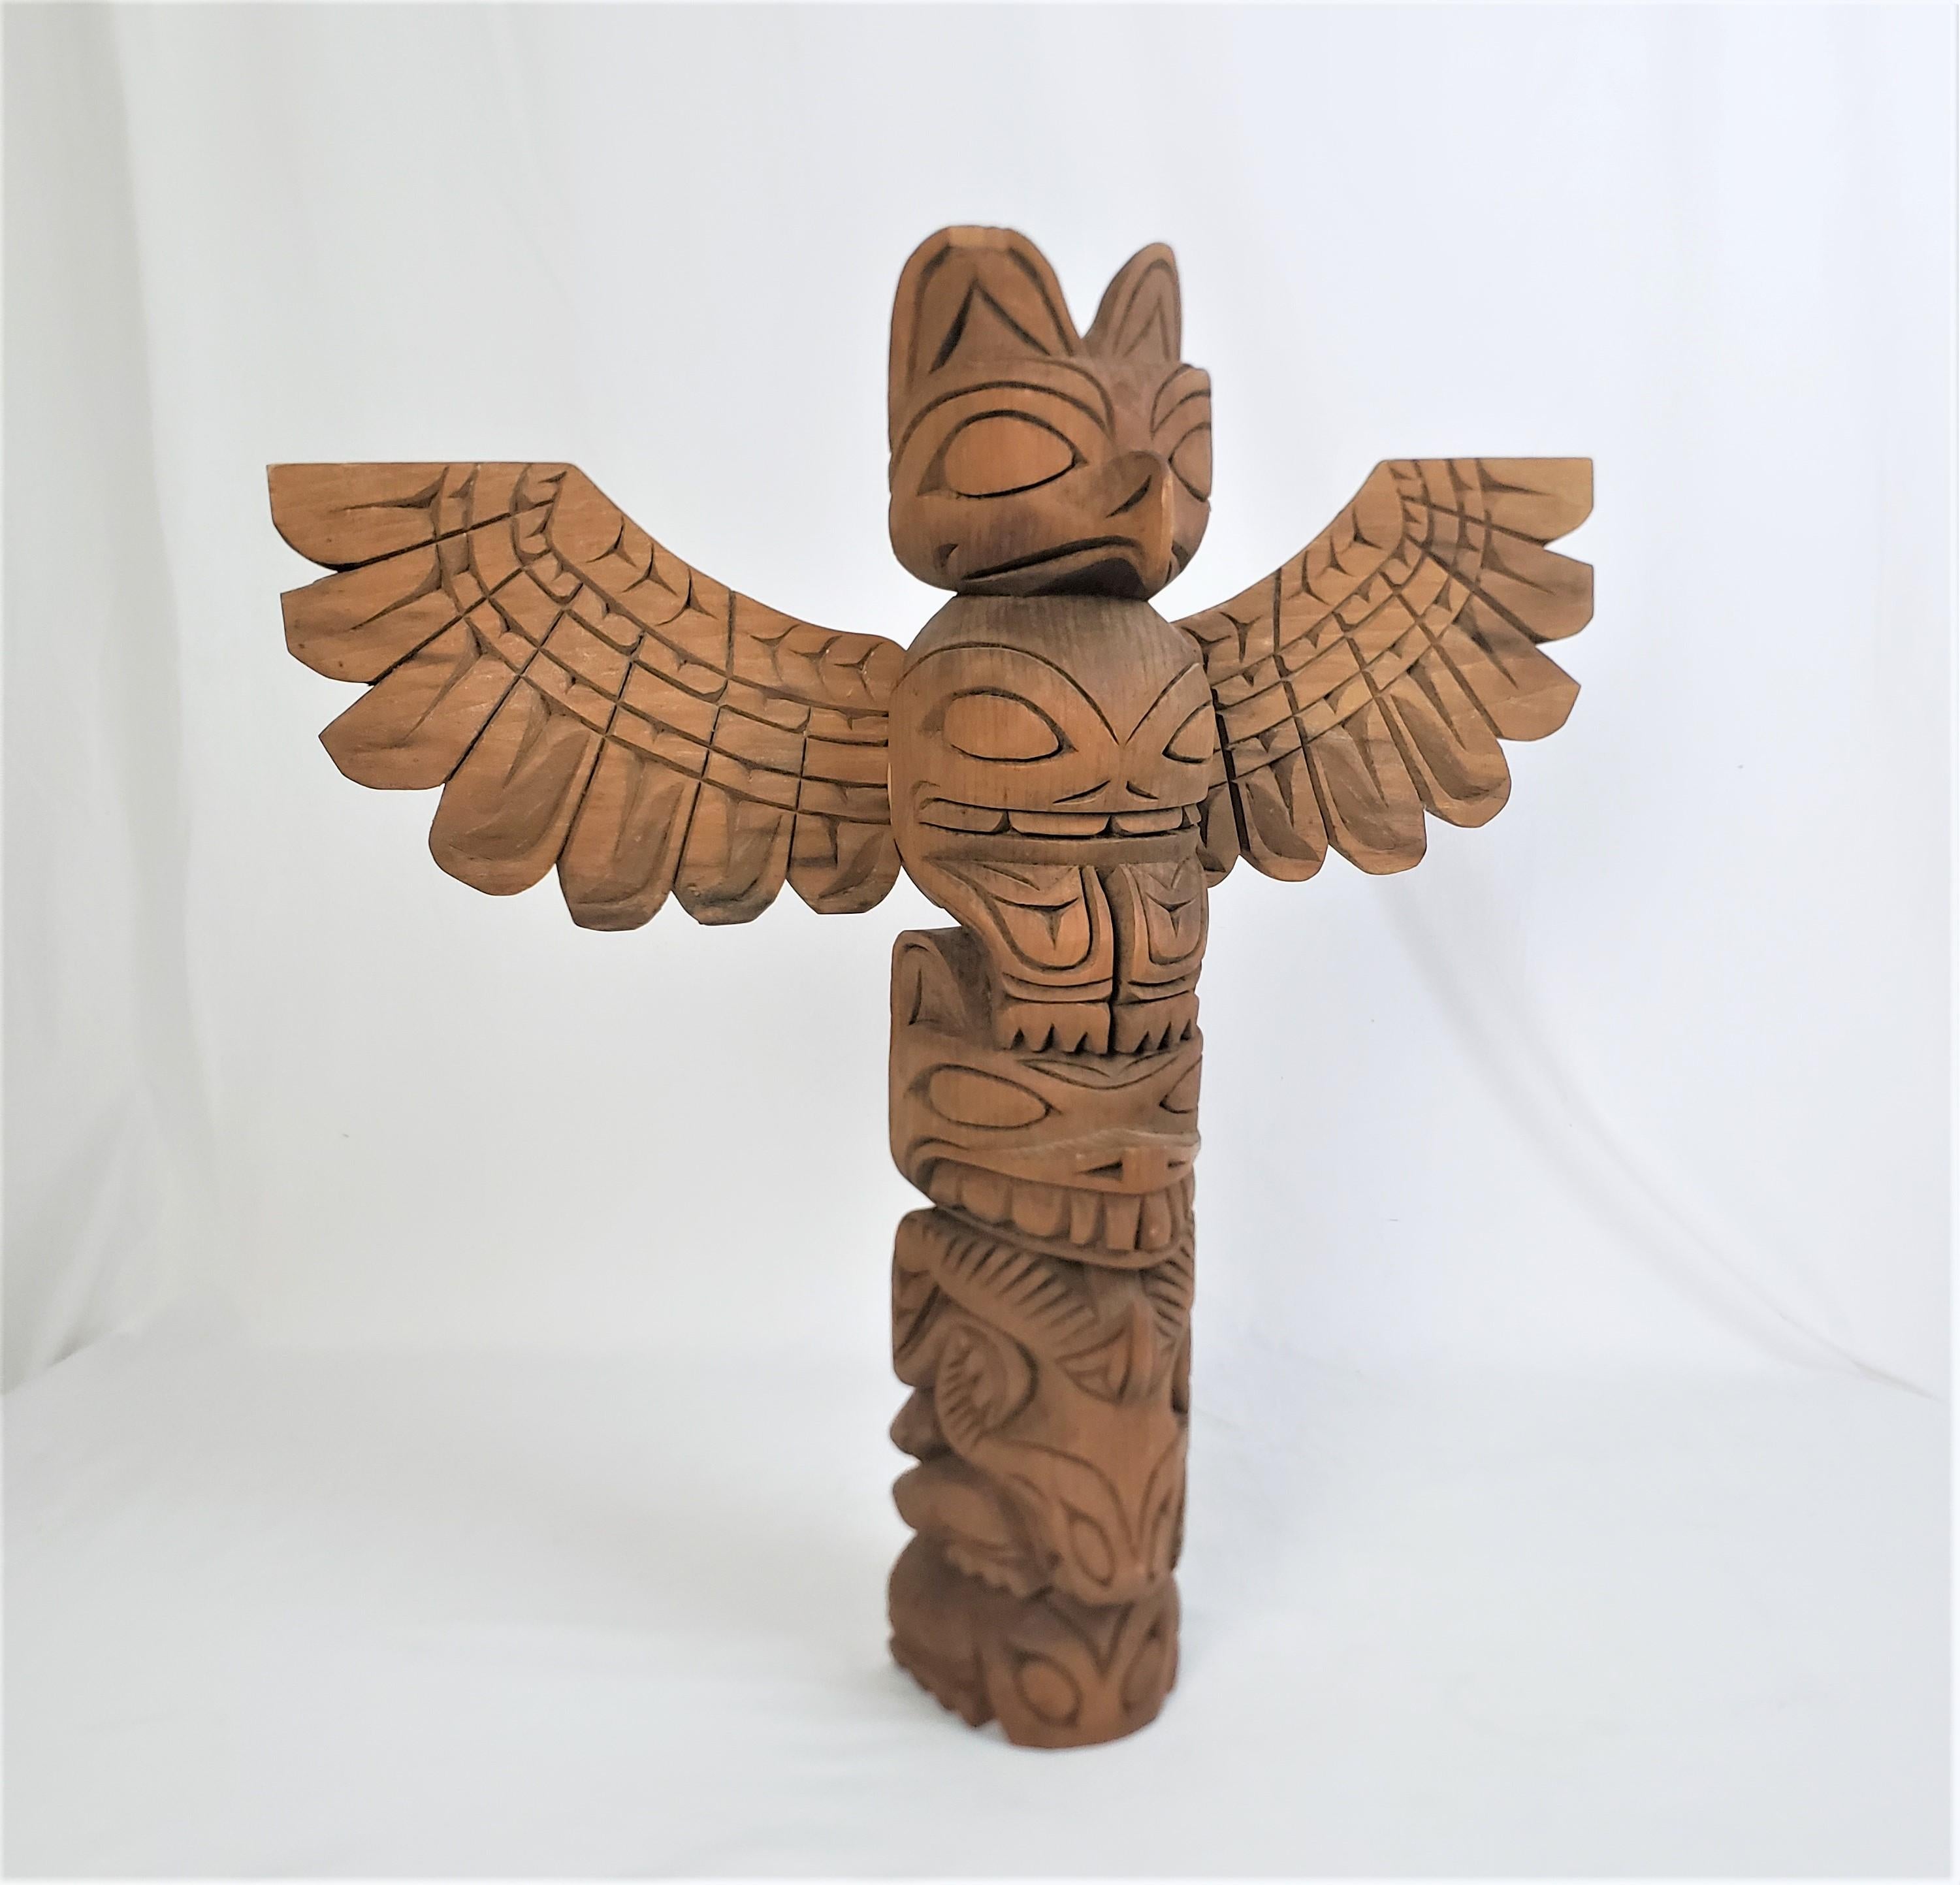 Ce mât totémique indigène américain a été réalisé par le célèbre maître sculpteur américain John T. Williams vers 1960 dans son style Haida de la côte ouest. La sculpture est faite en cèdre et comporte des animaux stylisés sculptés à la main et des